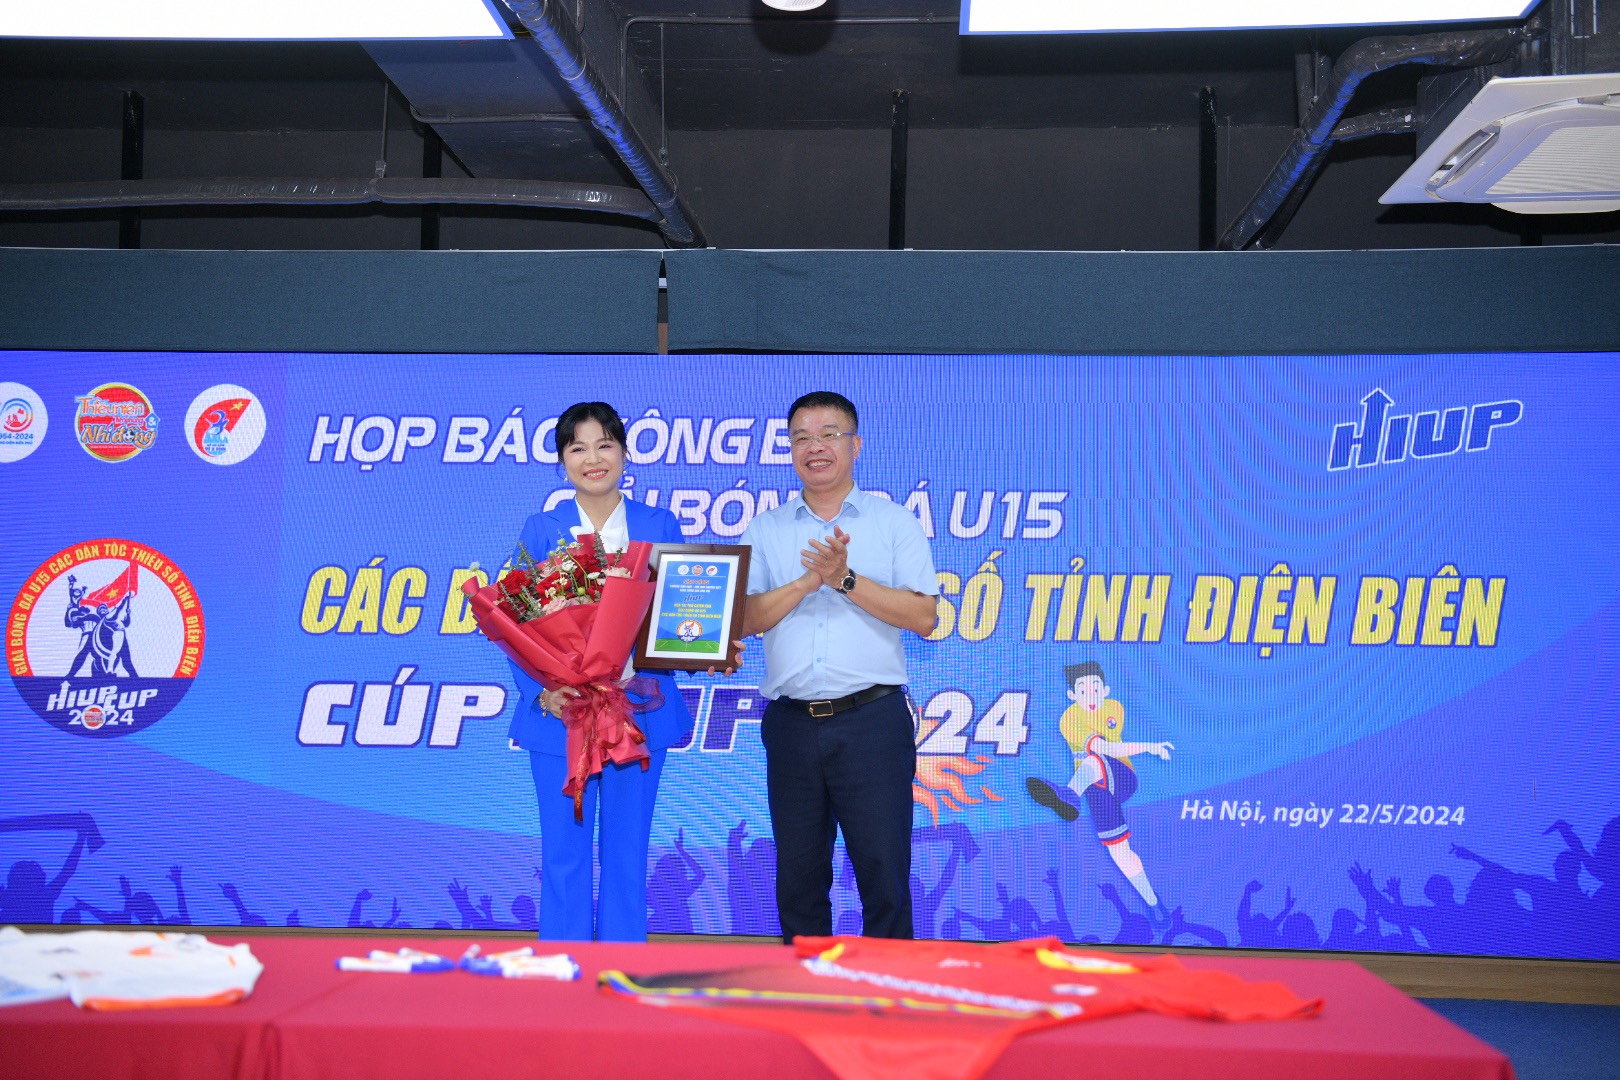 Nhà văn, nhà báo Nguyễn Phan Khuê - Tổng Biên tập báo TNTP&NĐ trao Bảng Danh vị cho MC Nguyễn Hoàng Linh, đại diện nhà tài trợ HIUP.